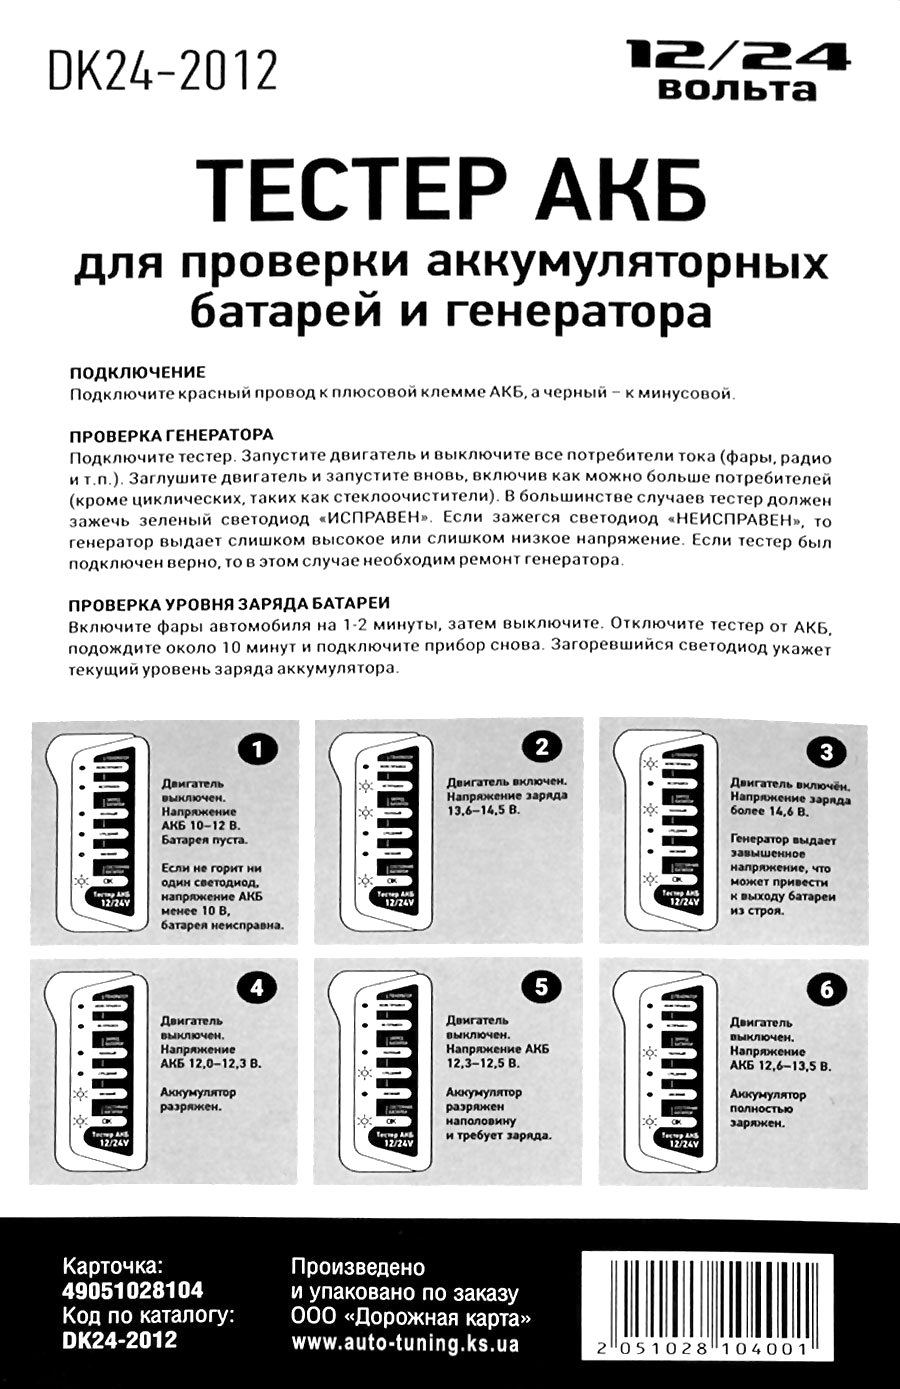 Описание и порядок подключения цифрового тестера аккумуляторных батарей, 12V/24V, DK24-2012